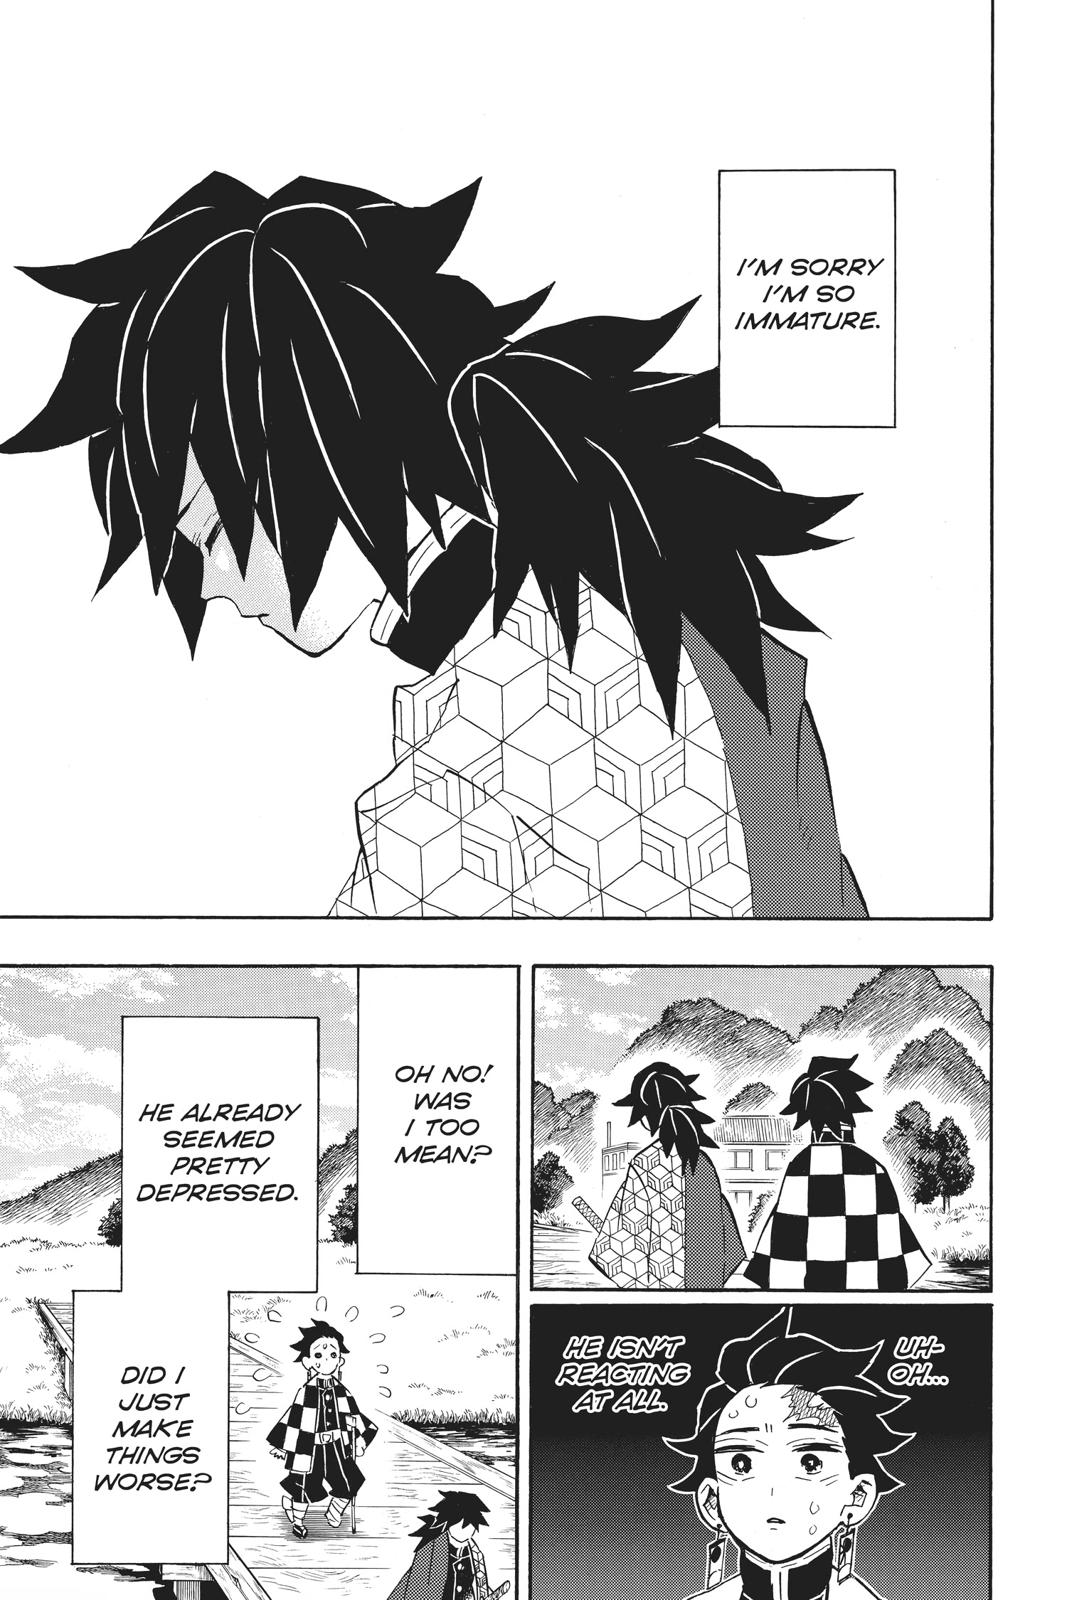 Demon Slayer Manga Manga Chapter - 131 - image 10